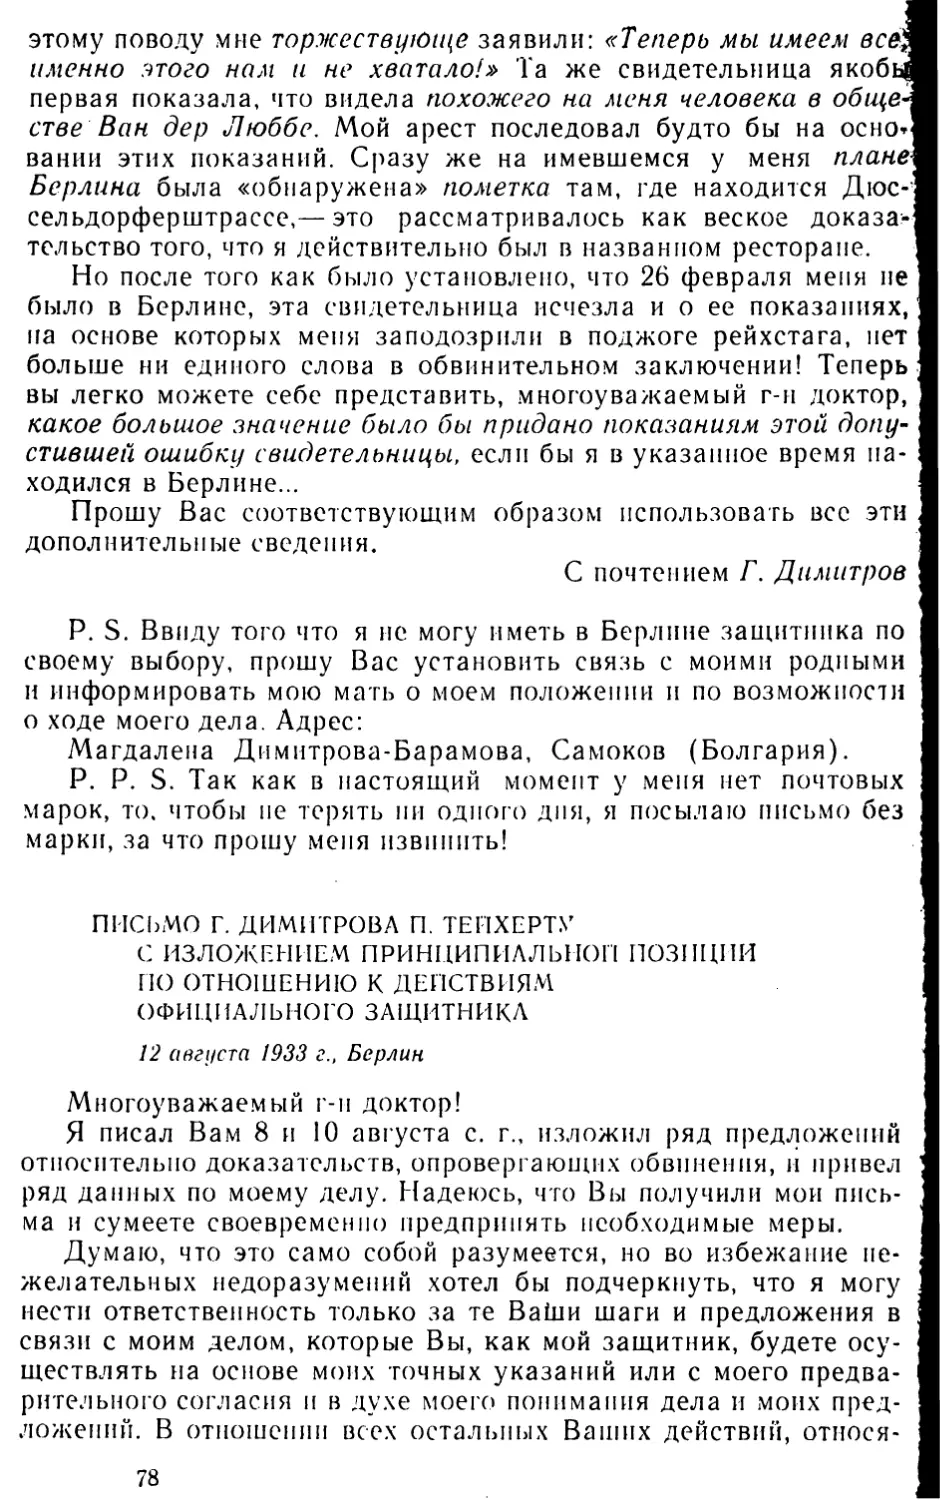 Письмо Г. Димитрова П. Тейхерту с изложением принципиальной позиции по отношению к действиям официального защитника. 12 августа 1933 г